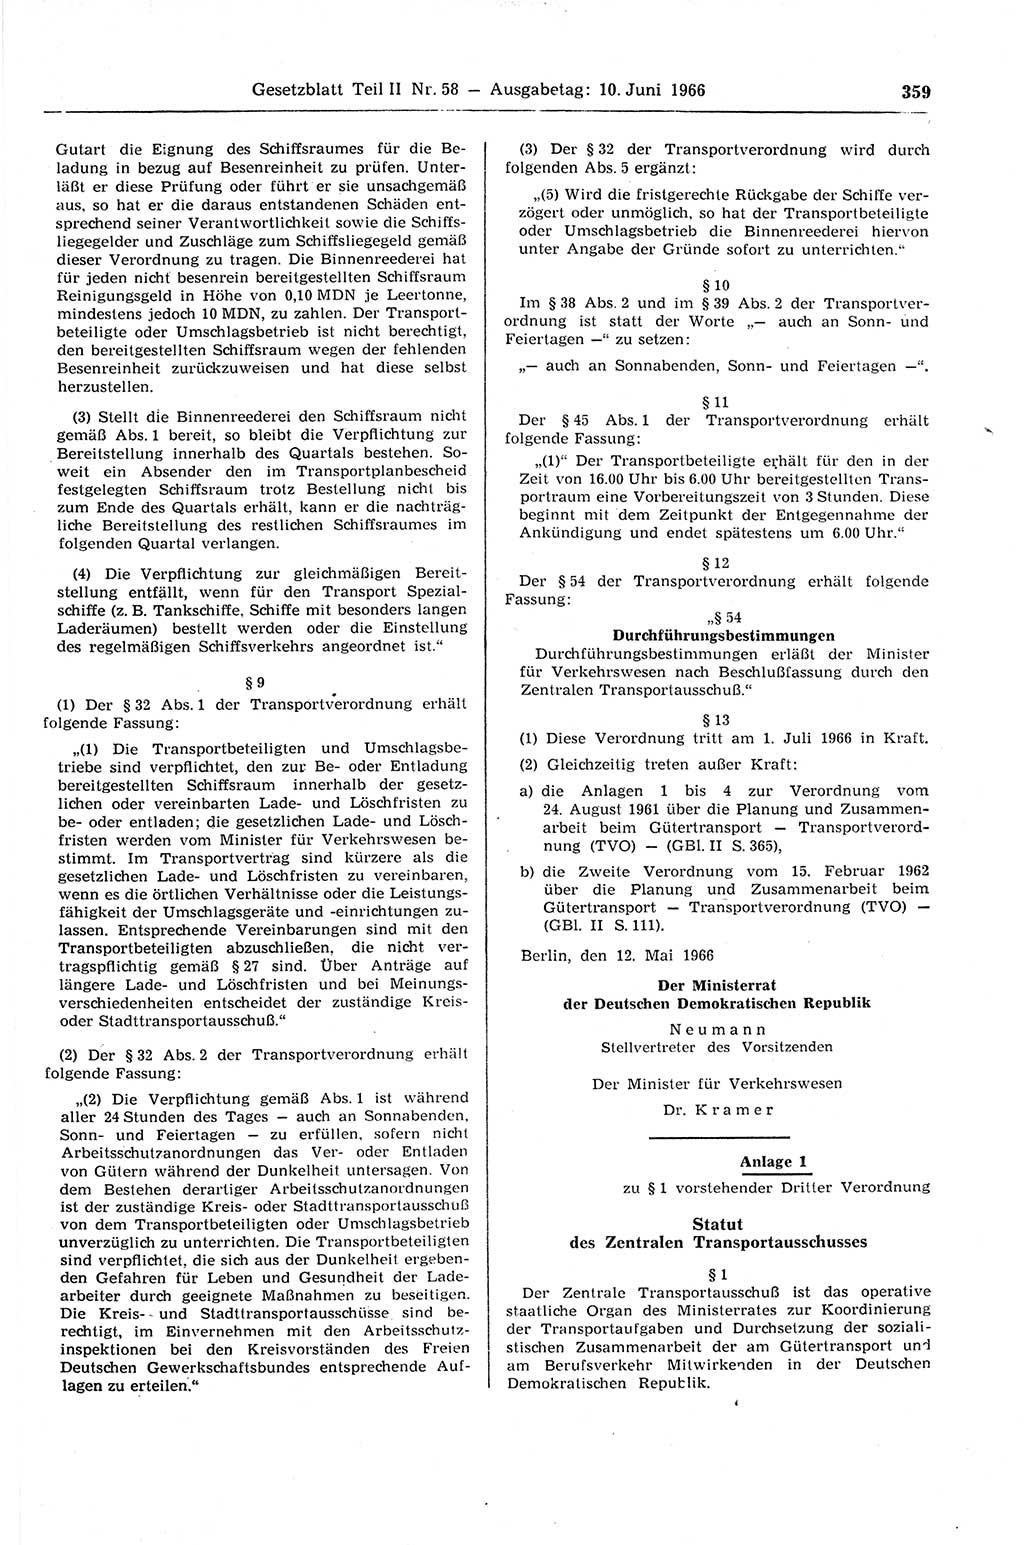 Gesetzblatt (GBl.) der Deutschen Demokratischen Republik (DDR) Teil ⅠⅠ 1966, Seite 359 (GBl. DDR ⅠⅠ 1966, S. 359)